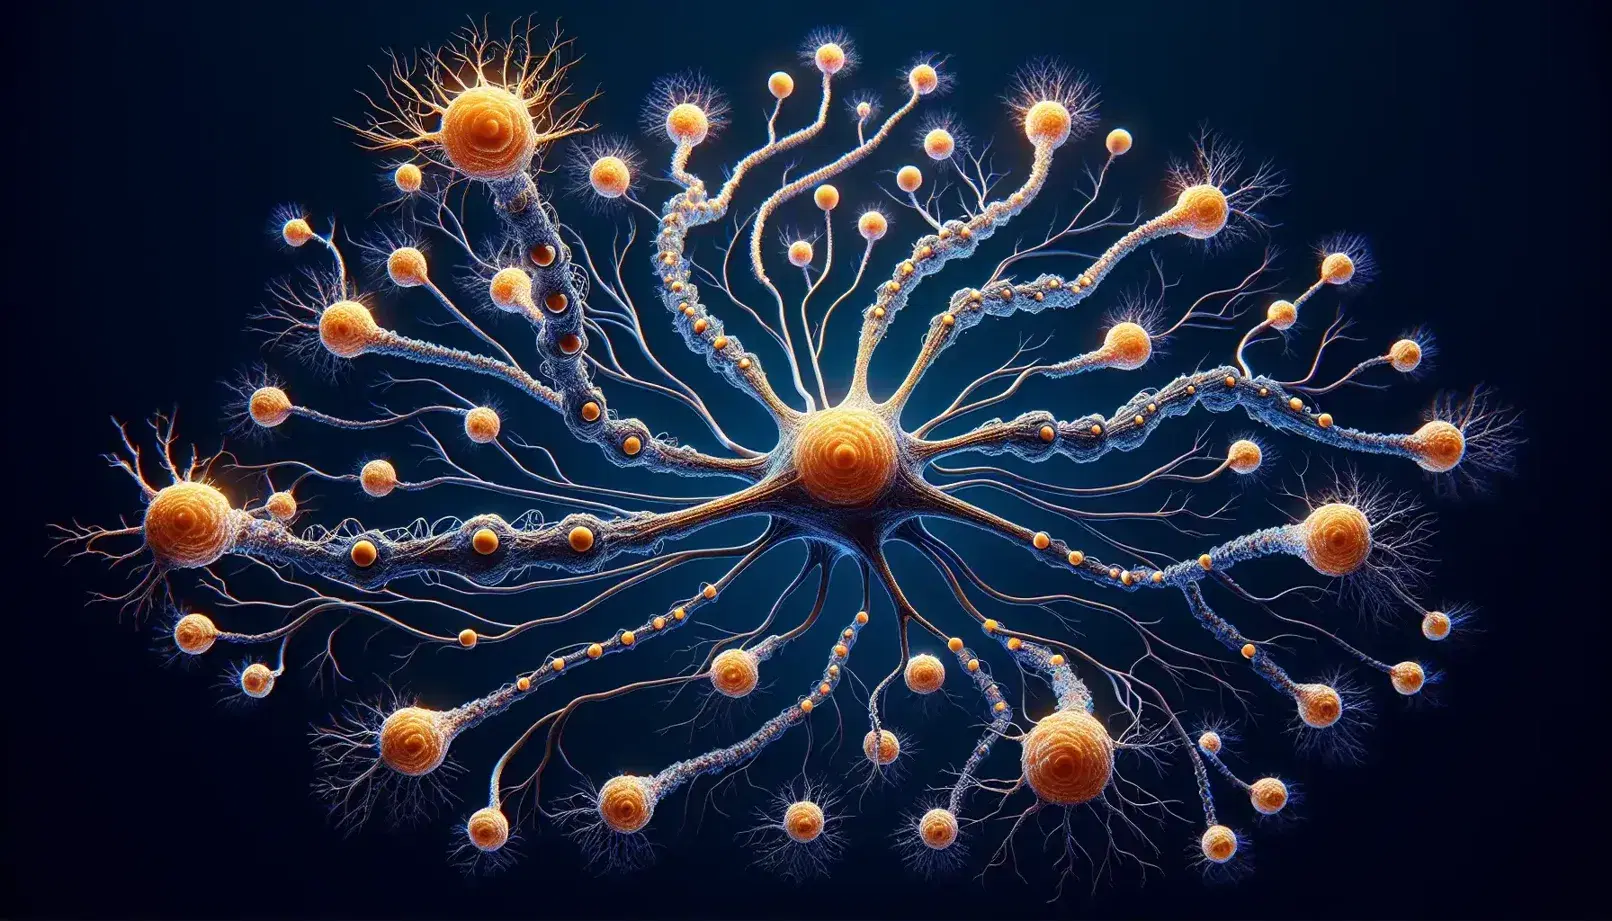 Red de neuronas interconectadas con una neurona central de tono naranja brillante y dendritas en un fondo azul profundo, destacando su axón con nódulos de Ranvier y vaina de mielina.